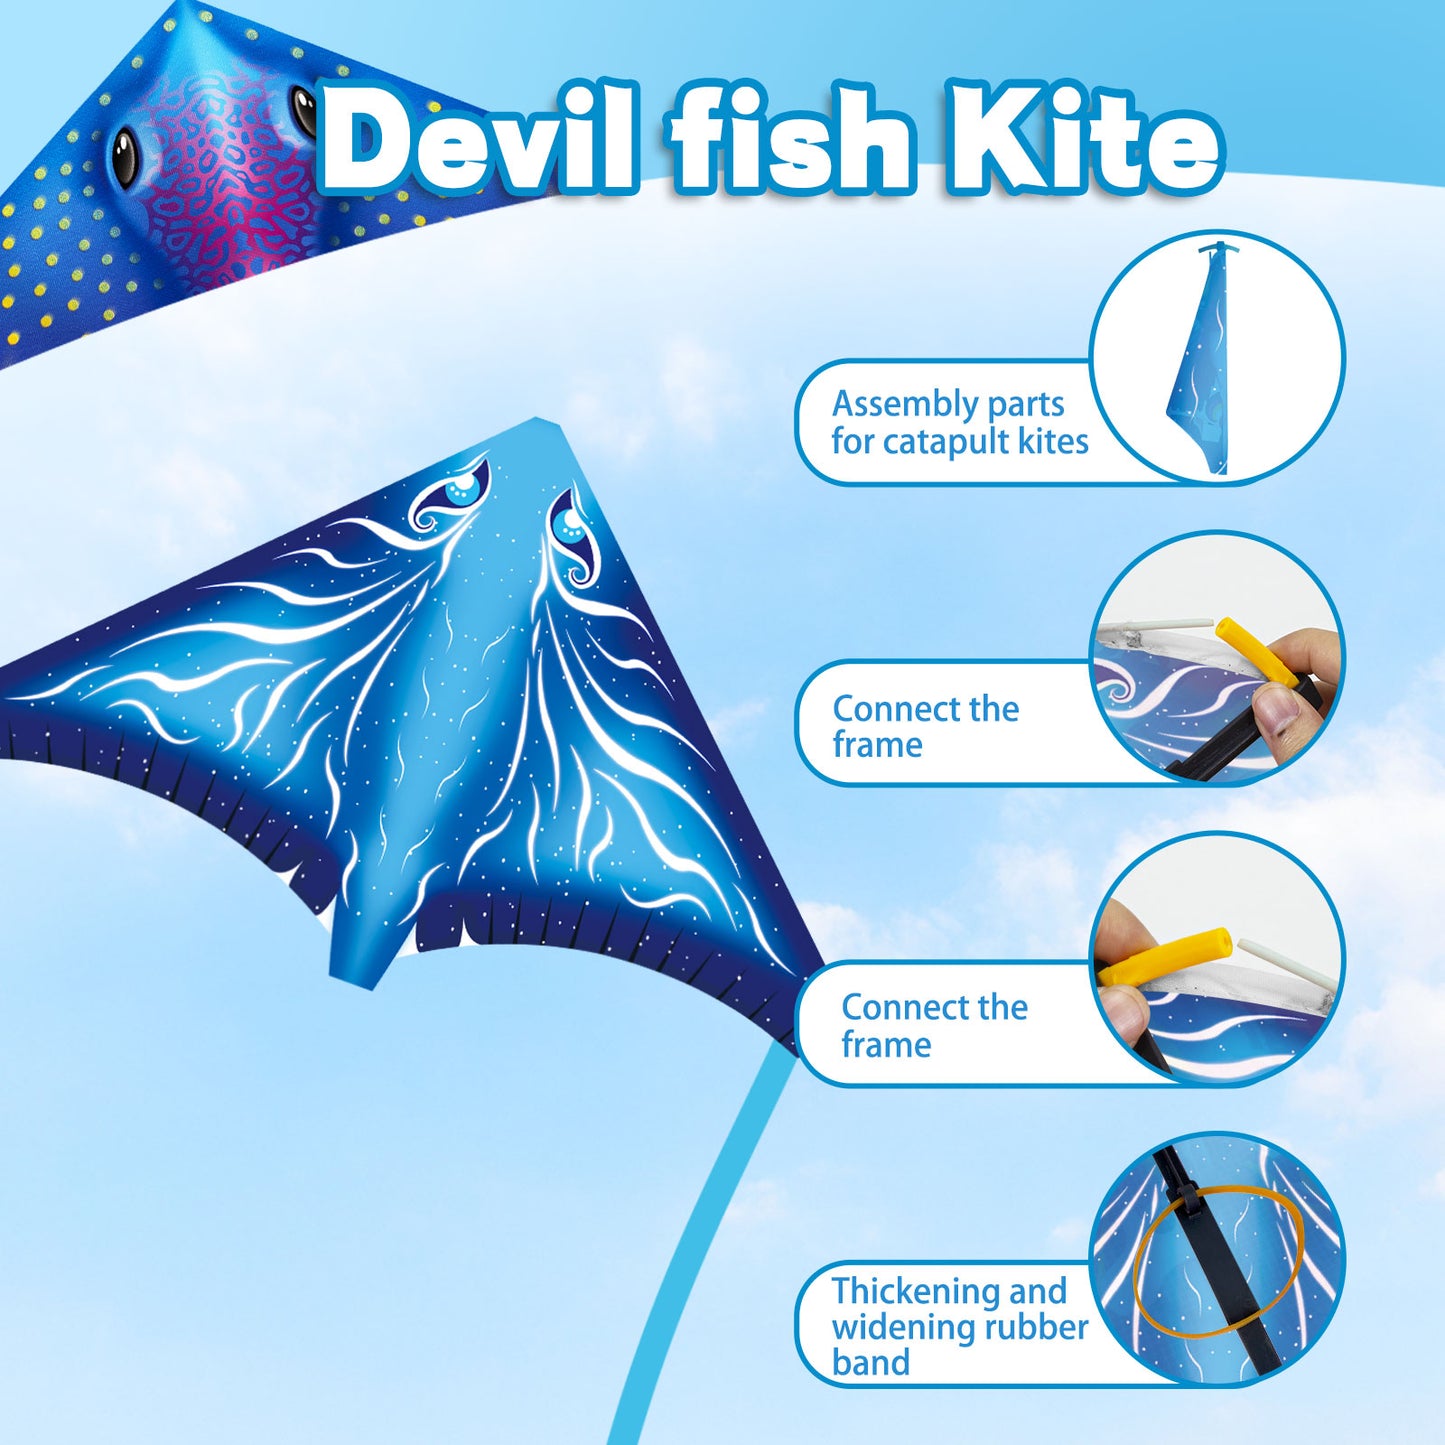 Mini Kite for Kids, Finger Launcher Kites Easy to Fly on Beach|Park|Plaza|Garden|Backyard, Birthday Easter Gifts for Boys Girls Ages 3 4 5 6 7 8-18 Years Outdoor Flying Toys,Mini Kites Bulk